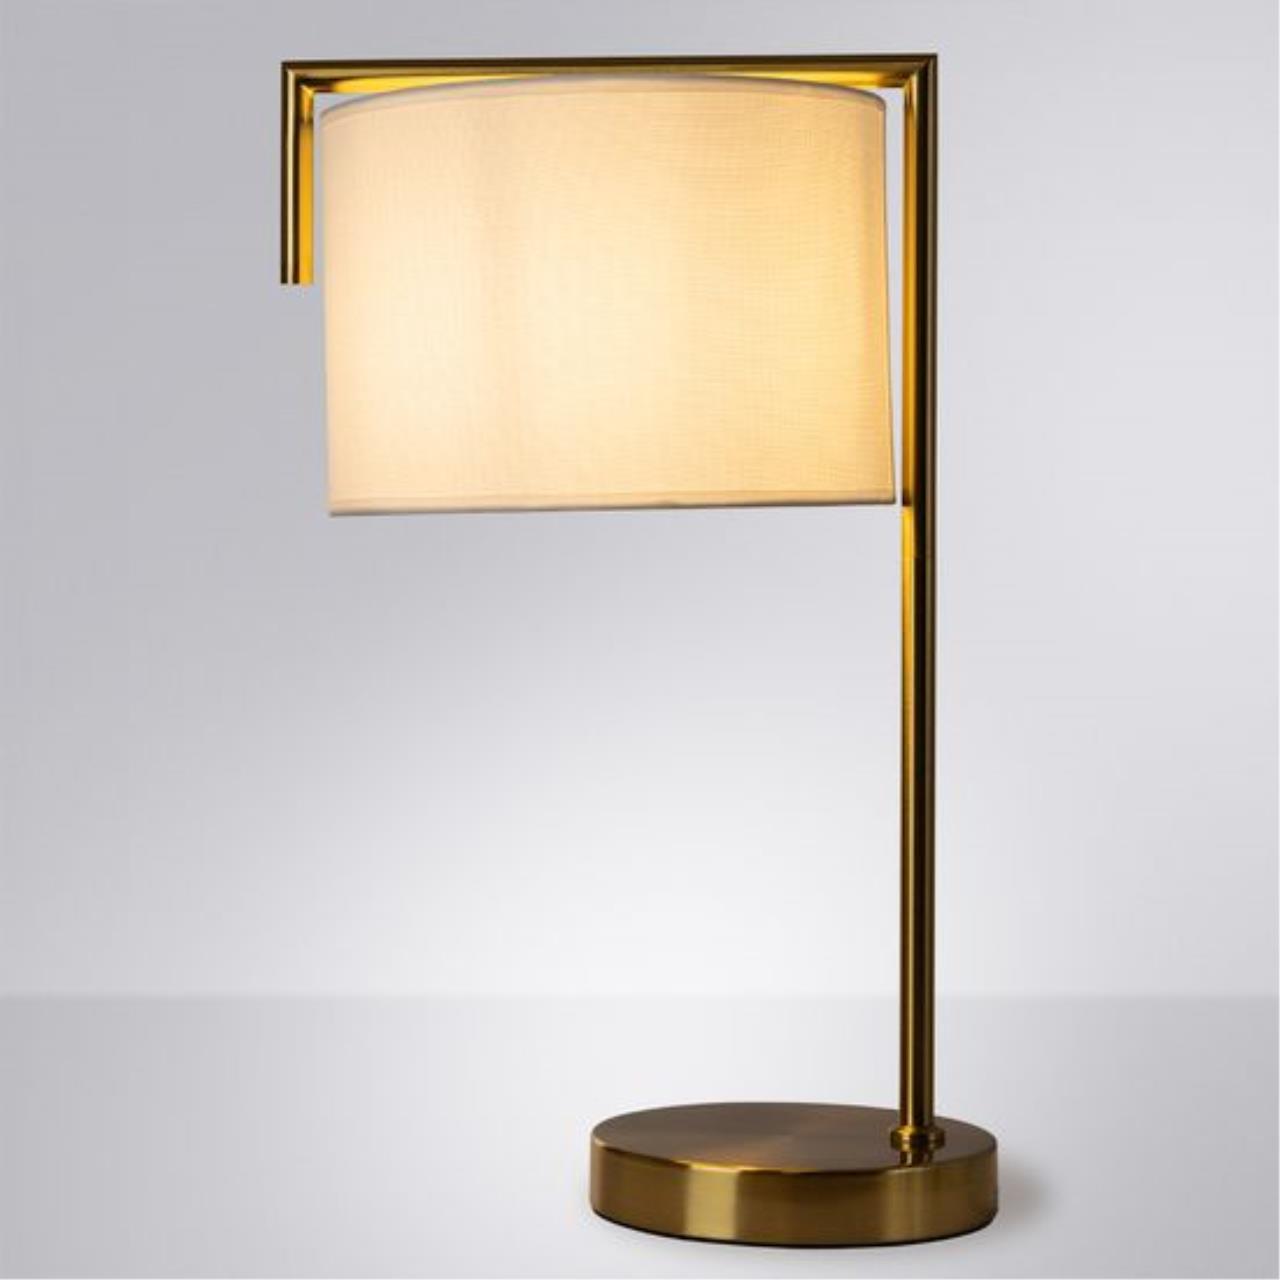 Интерьерная настольная лампа Arte lamp A5031LT-1PB